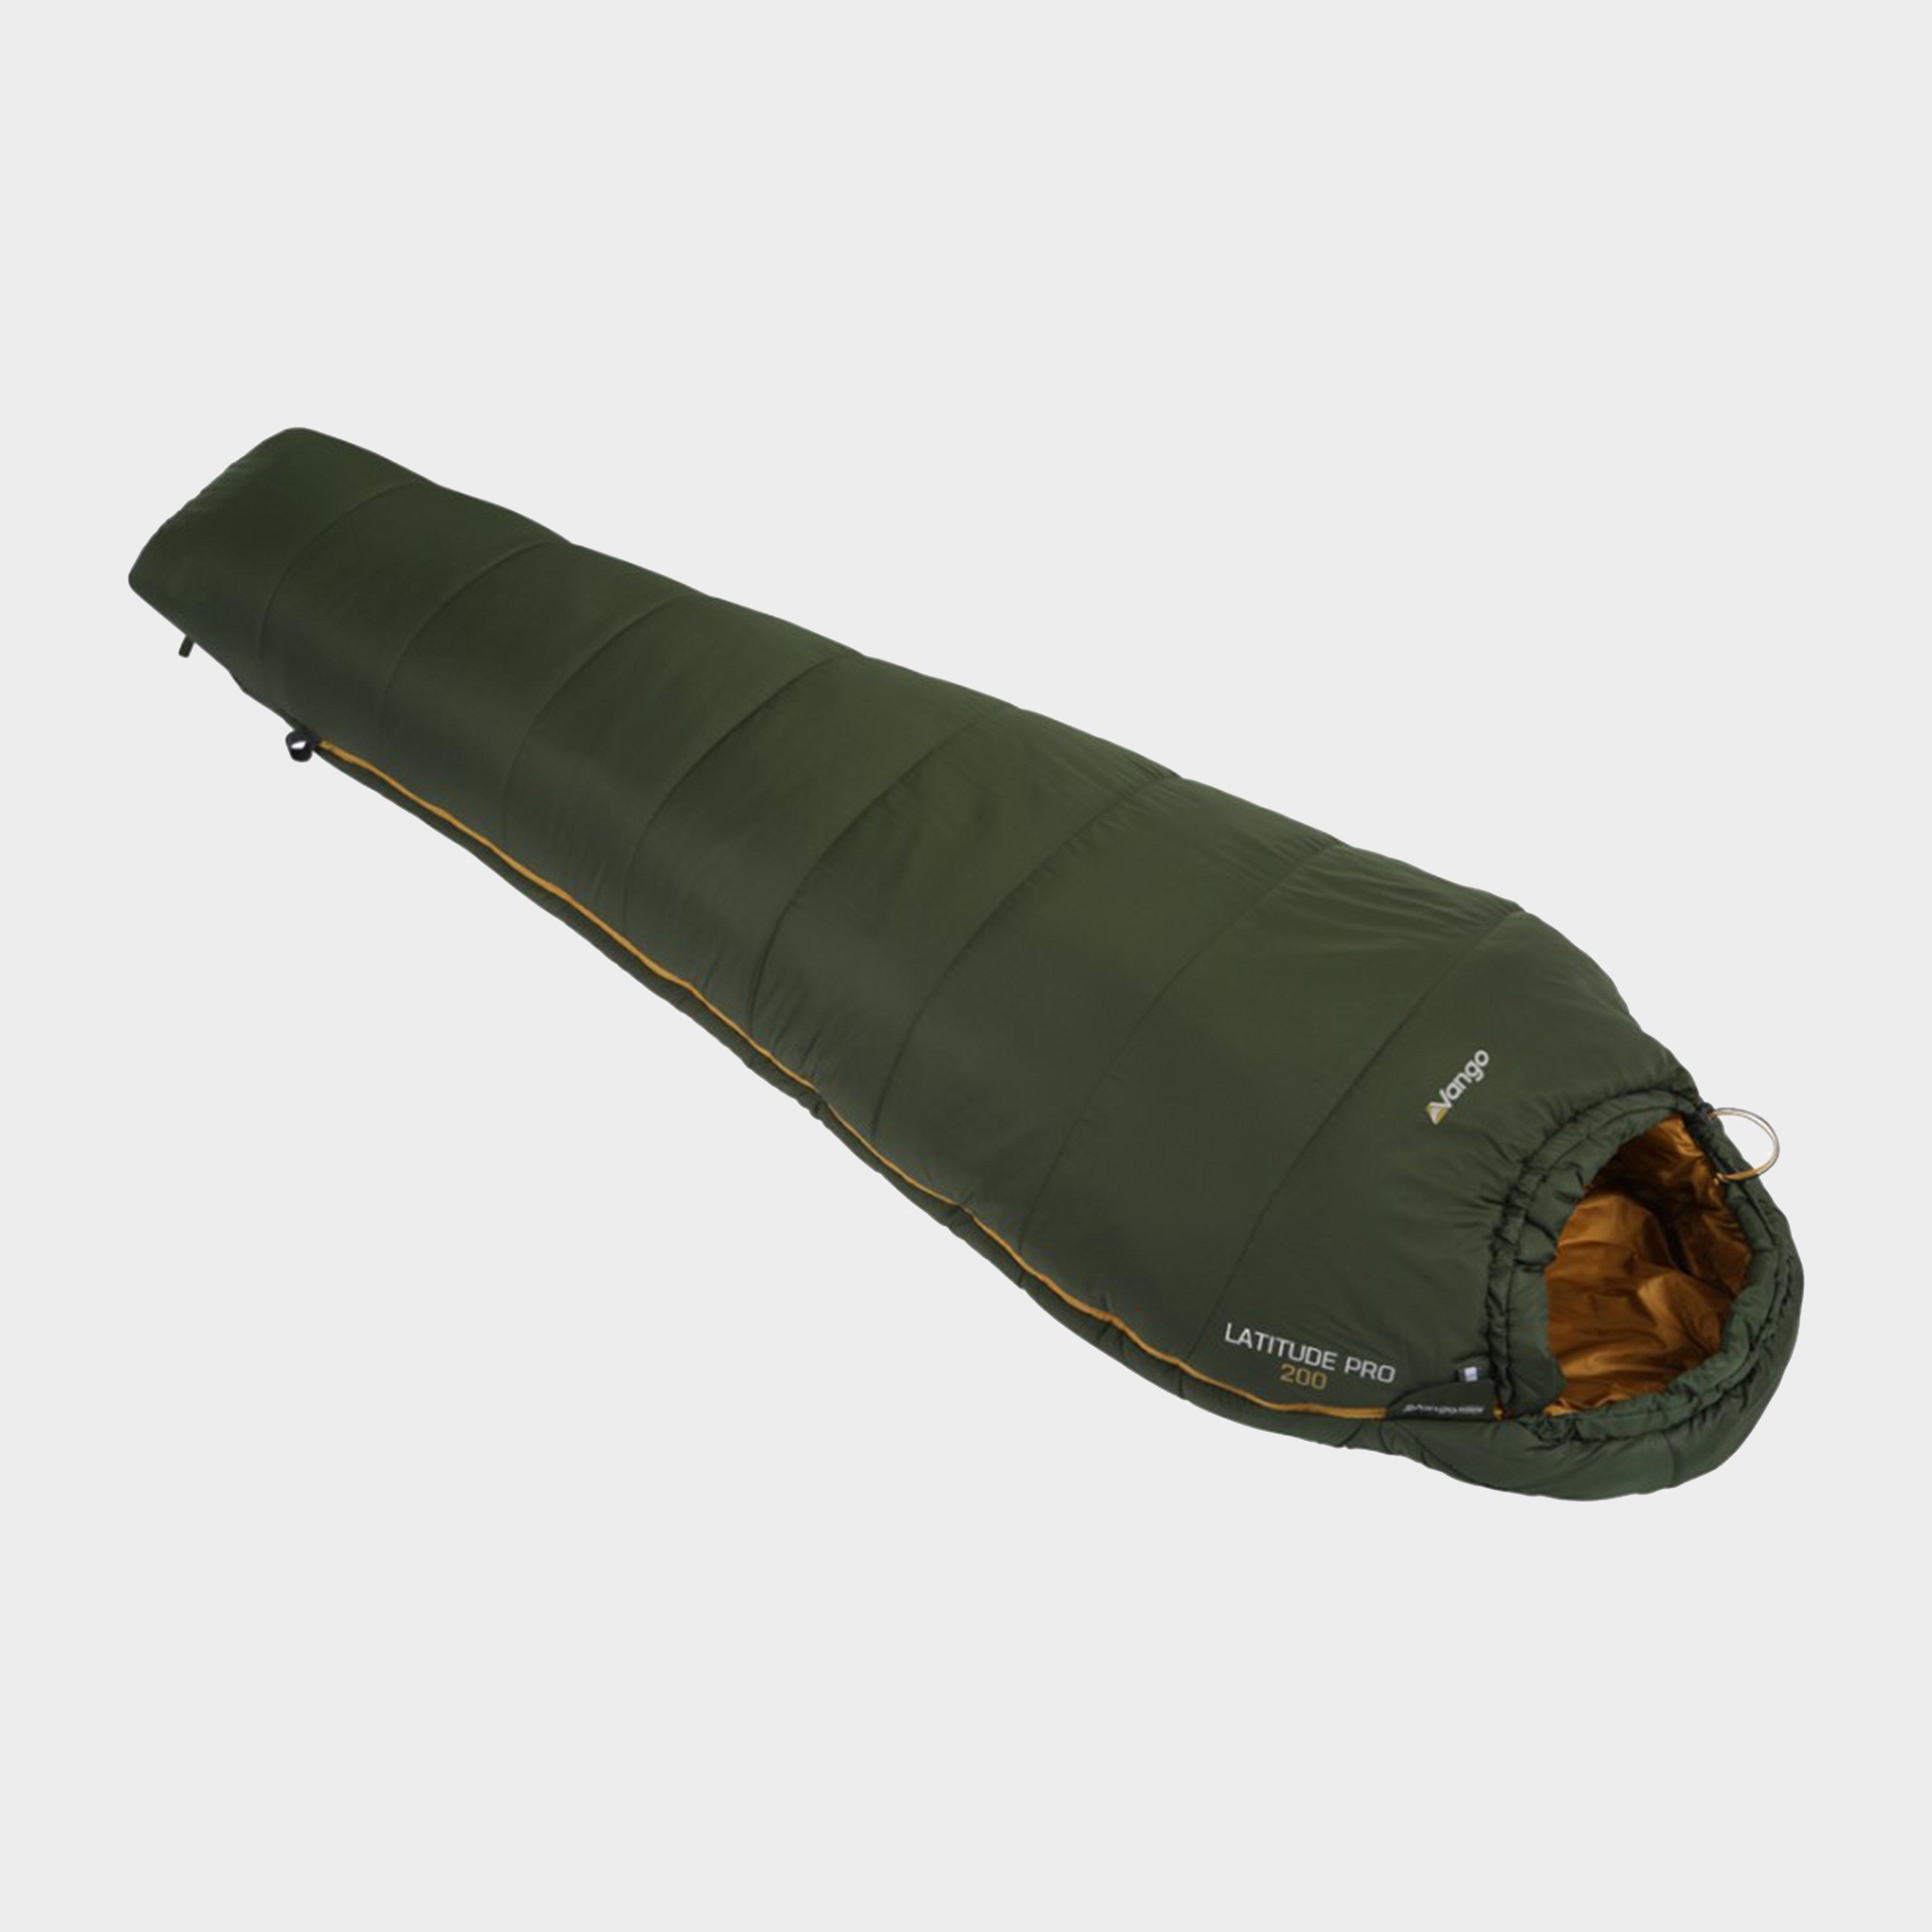  VANGO Latitude Pro 200 Sleeping Bag, Green